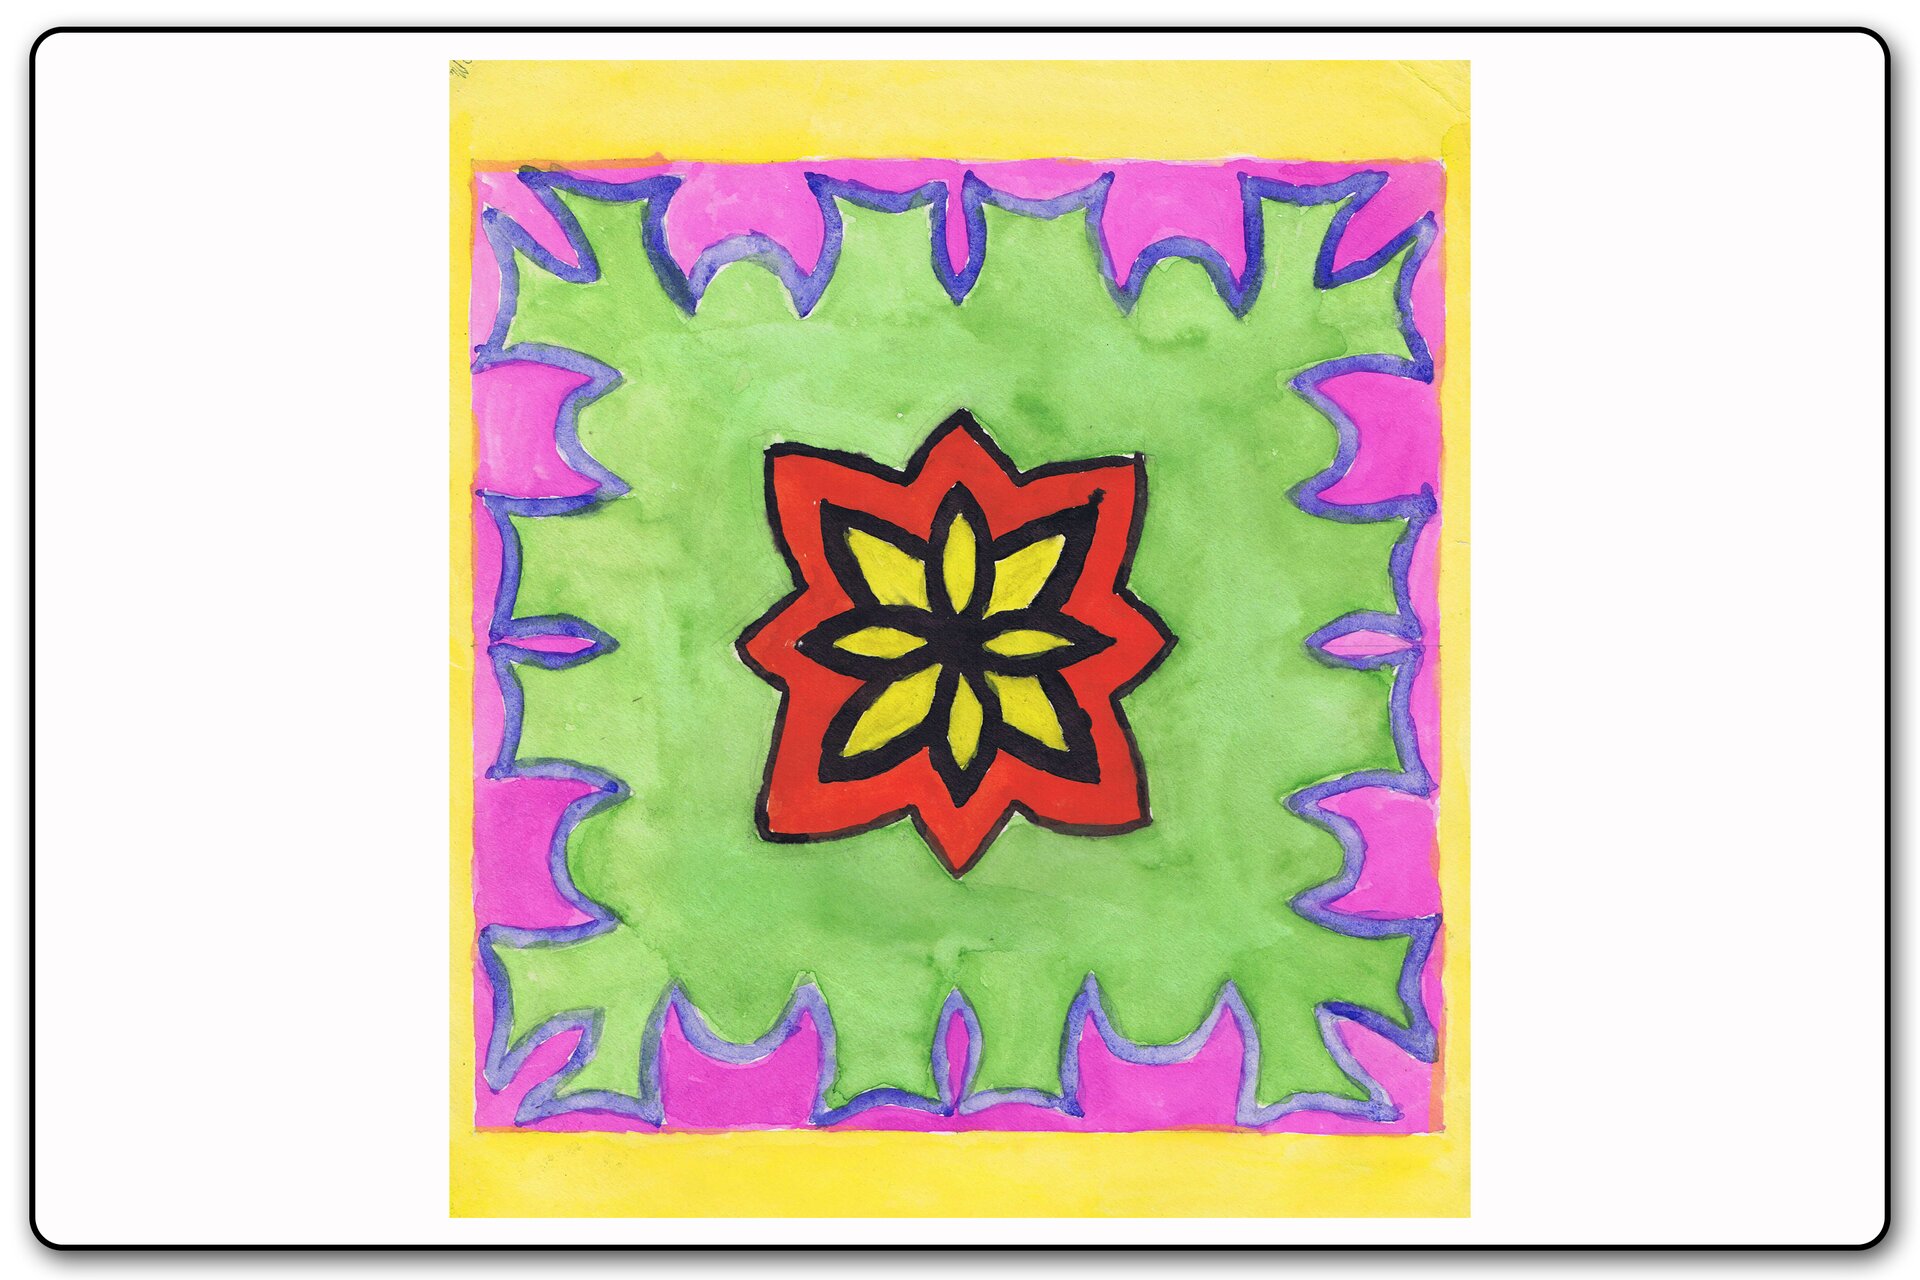 Ilustracja 2 galerii prac plastycznych uczniów. Ilustracja przedstawia geometryczny ornament kwiatu namalowany farbami.